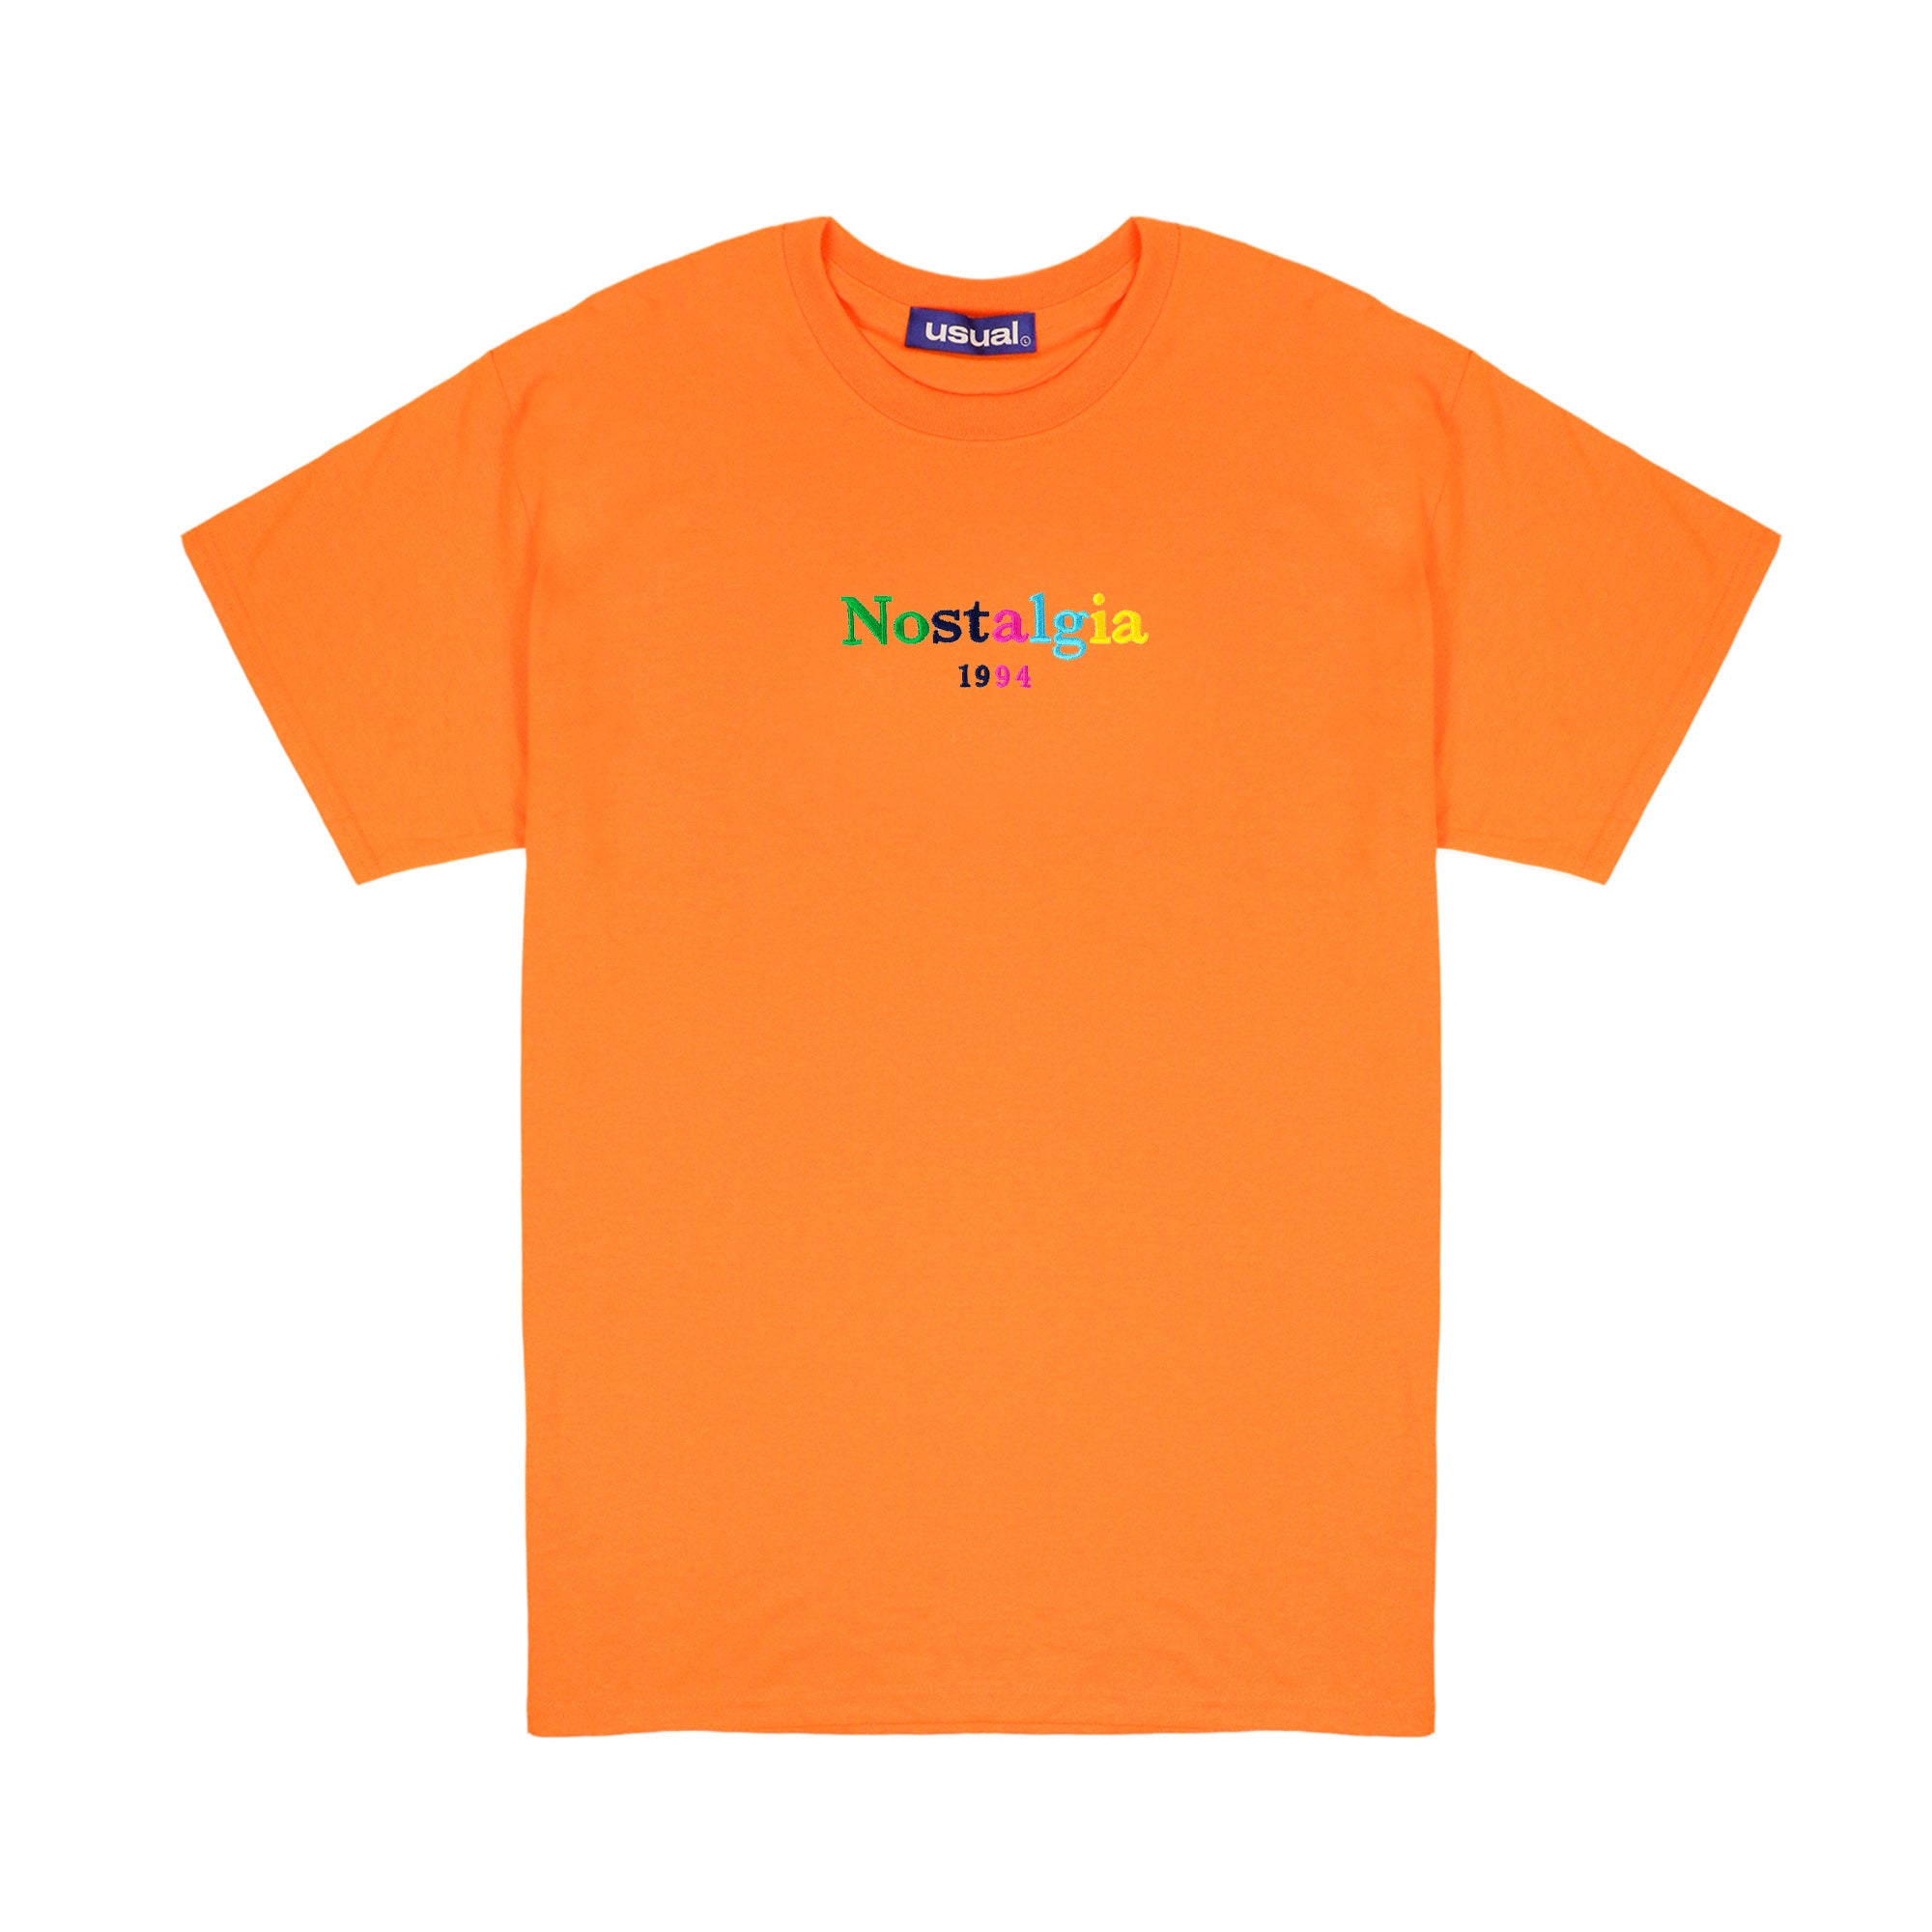 Nostalgia 1994 "Rainbow" T-Shirt